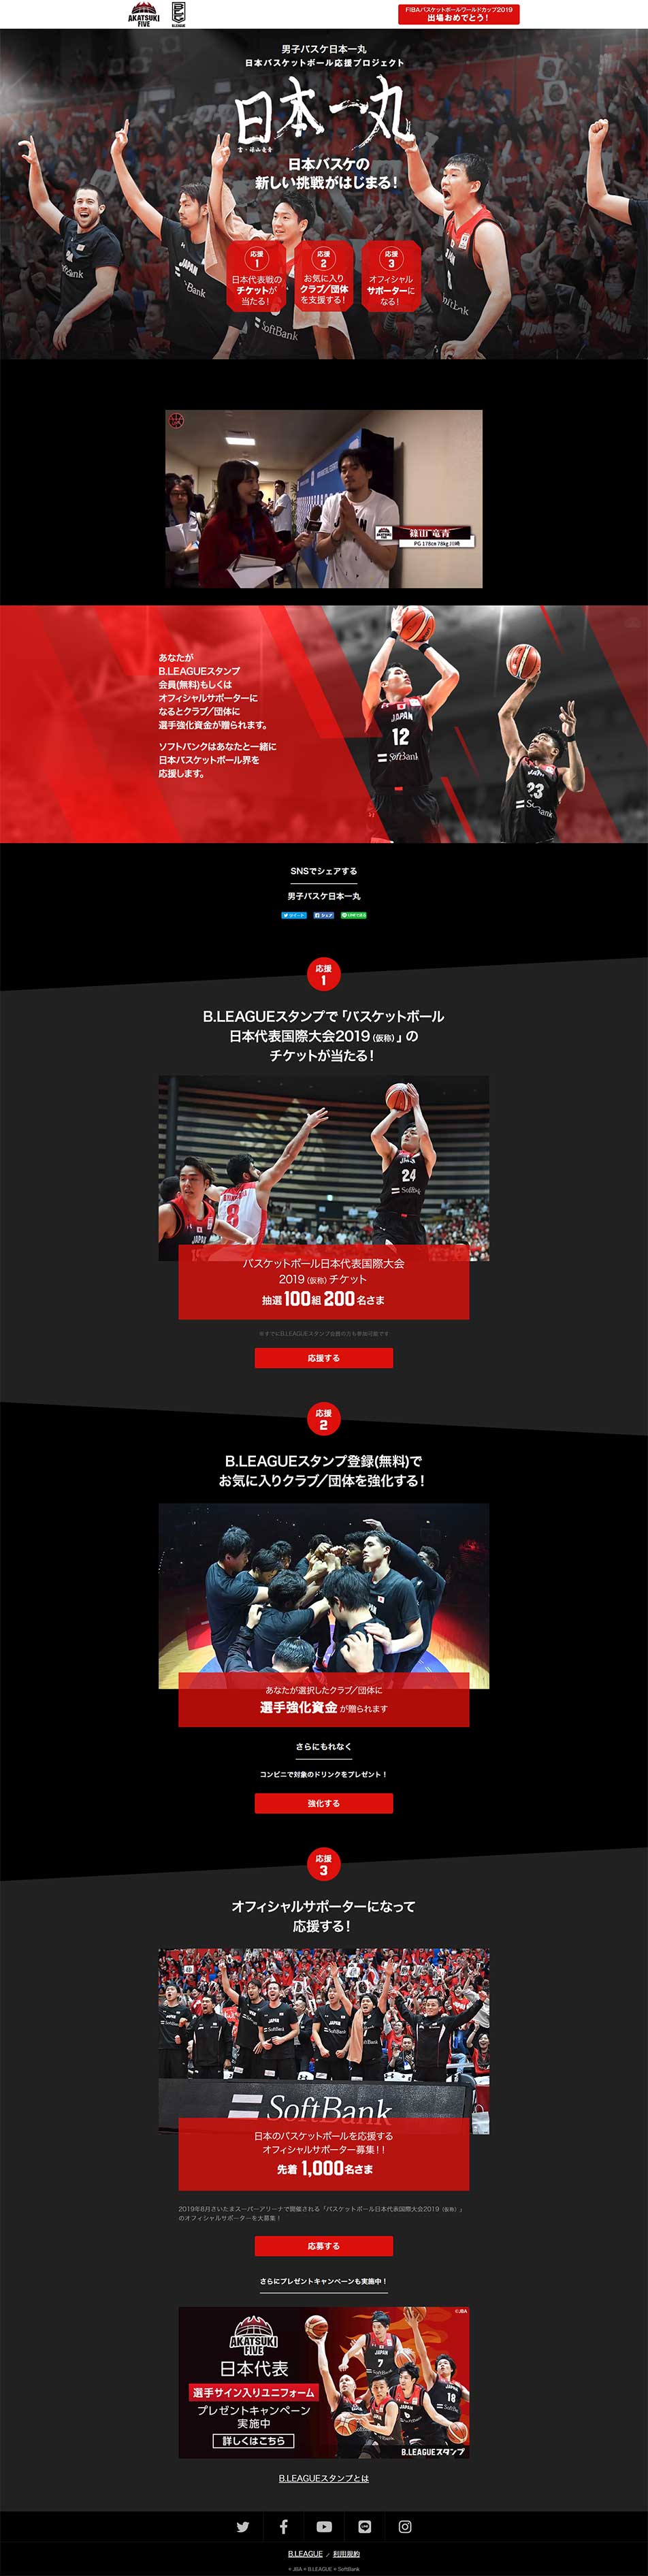 日本バスケットボール応援プロジェクト_pc_1